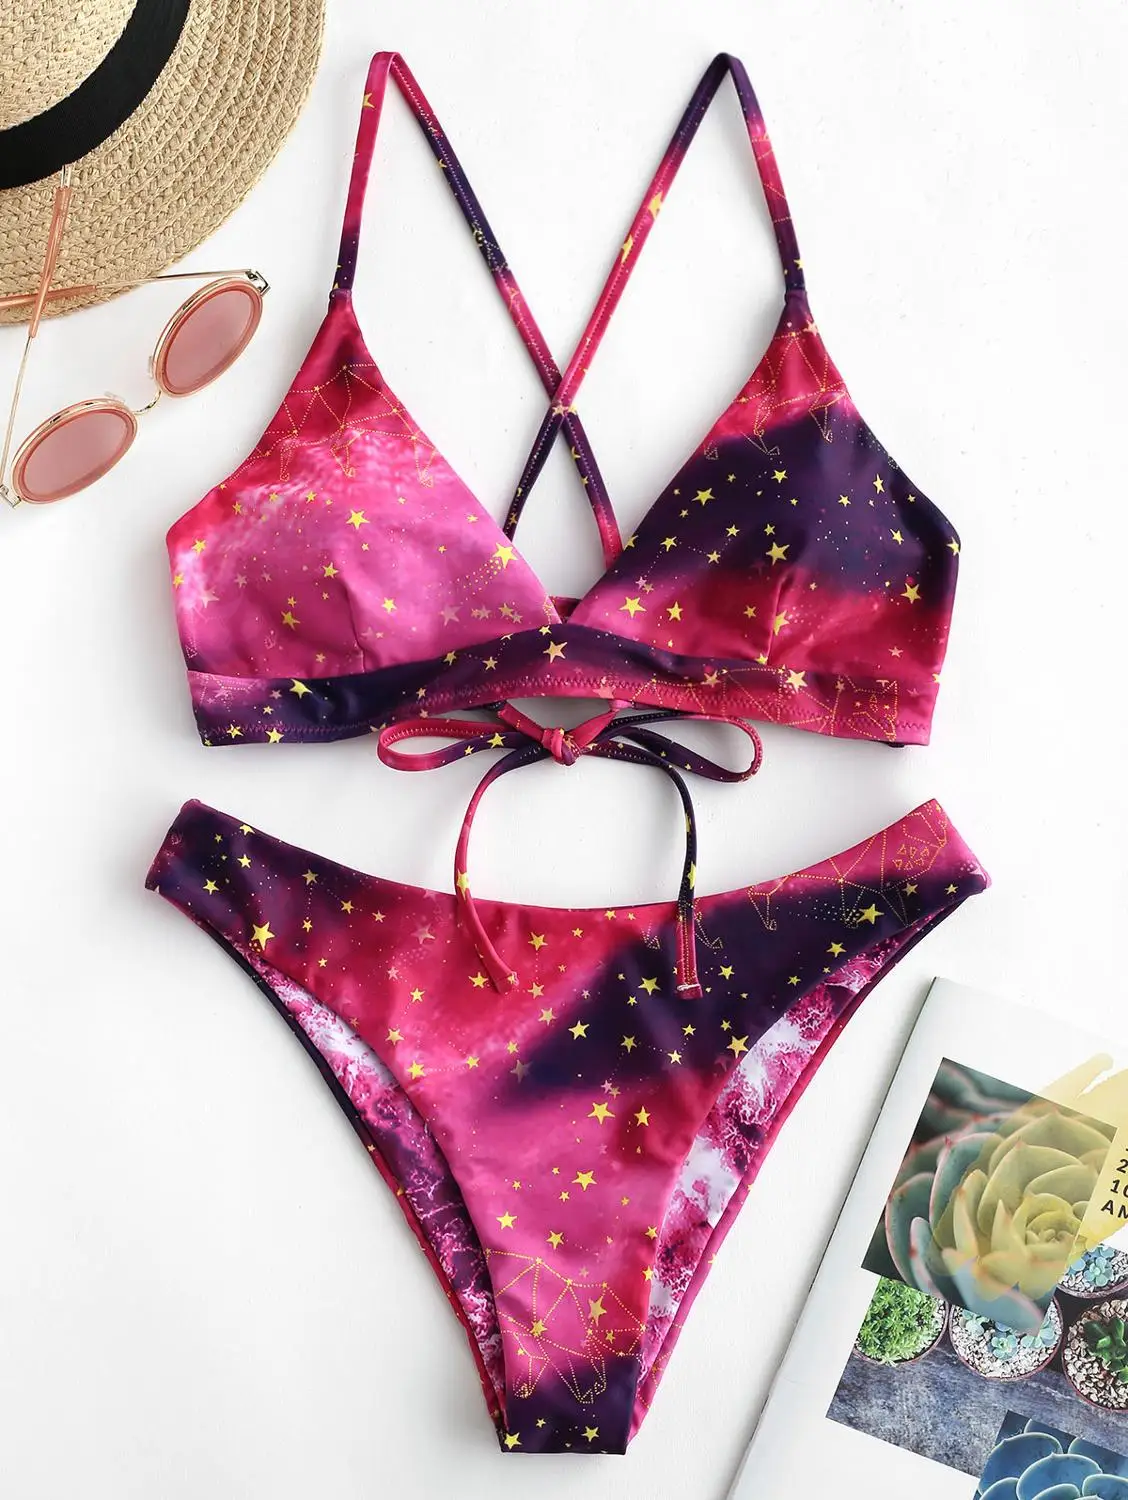 

ZAFUL Bikini Galaxy Print Lace-Up Reversible Bikini Set Spaghetti Straps Criss-Cross Swim Suit Wire Free Padded Swimwear 2019